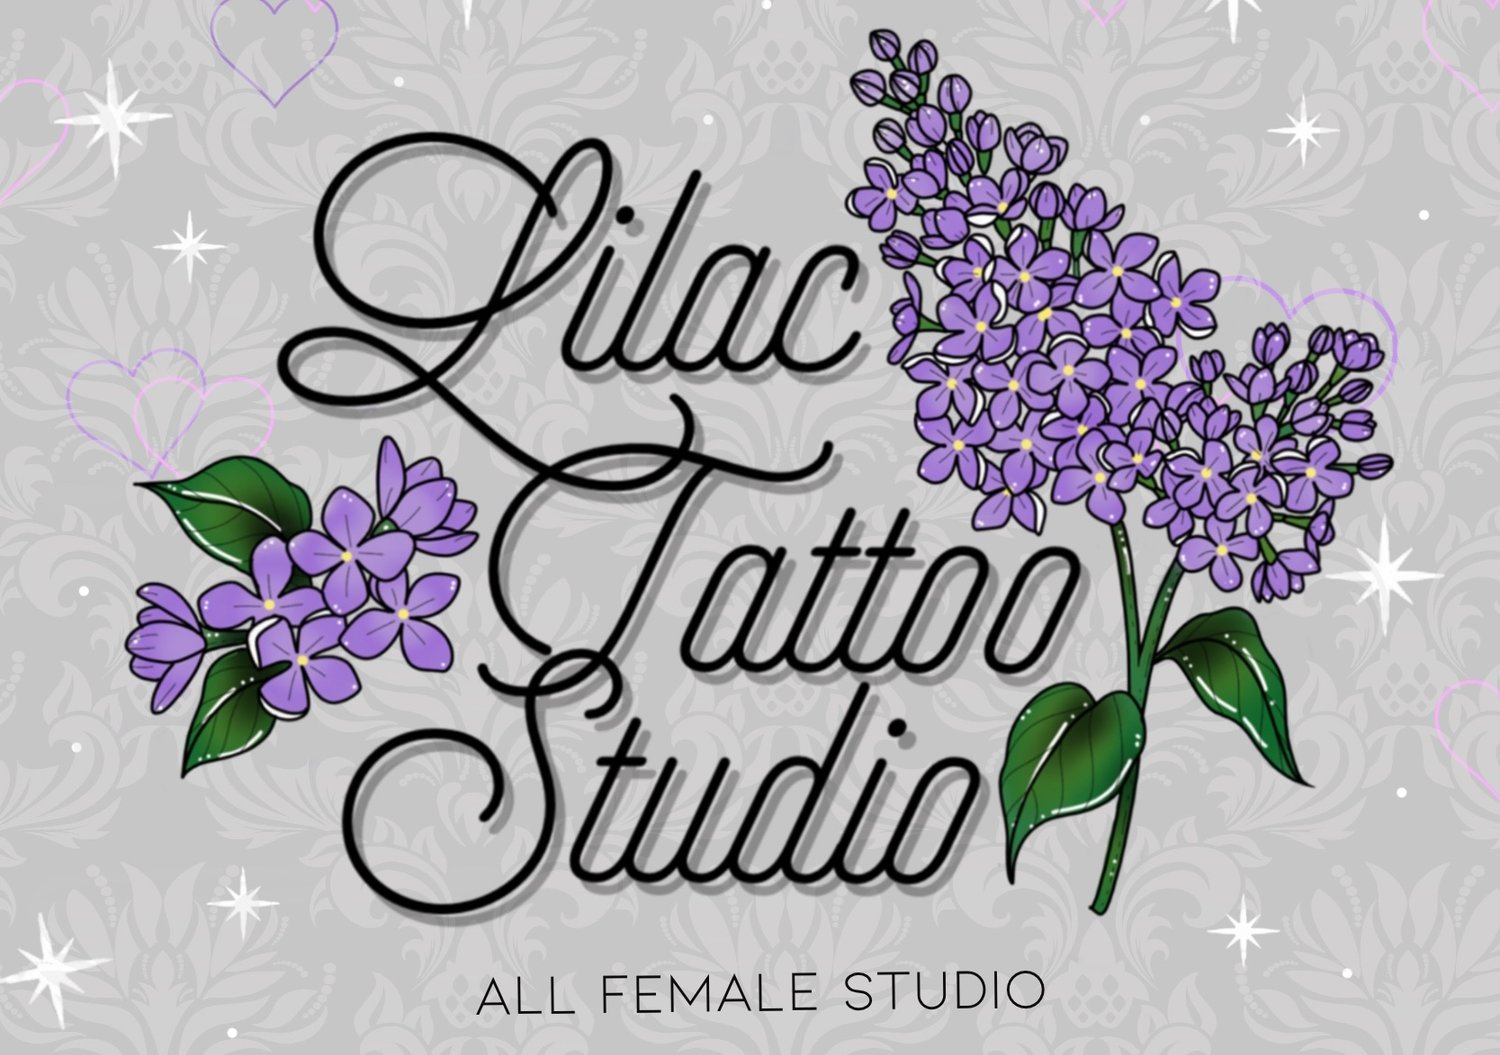 TEAM — Lilac Tattoo Studio